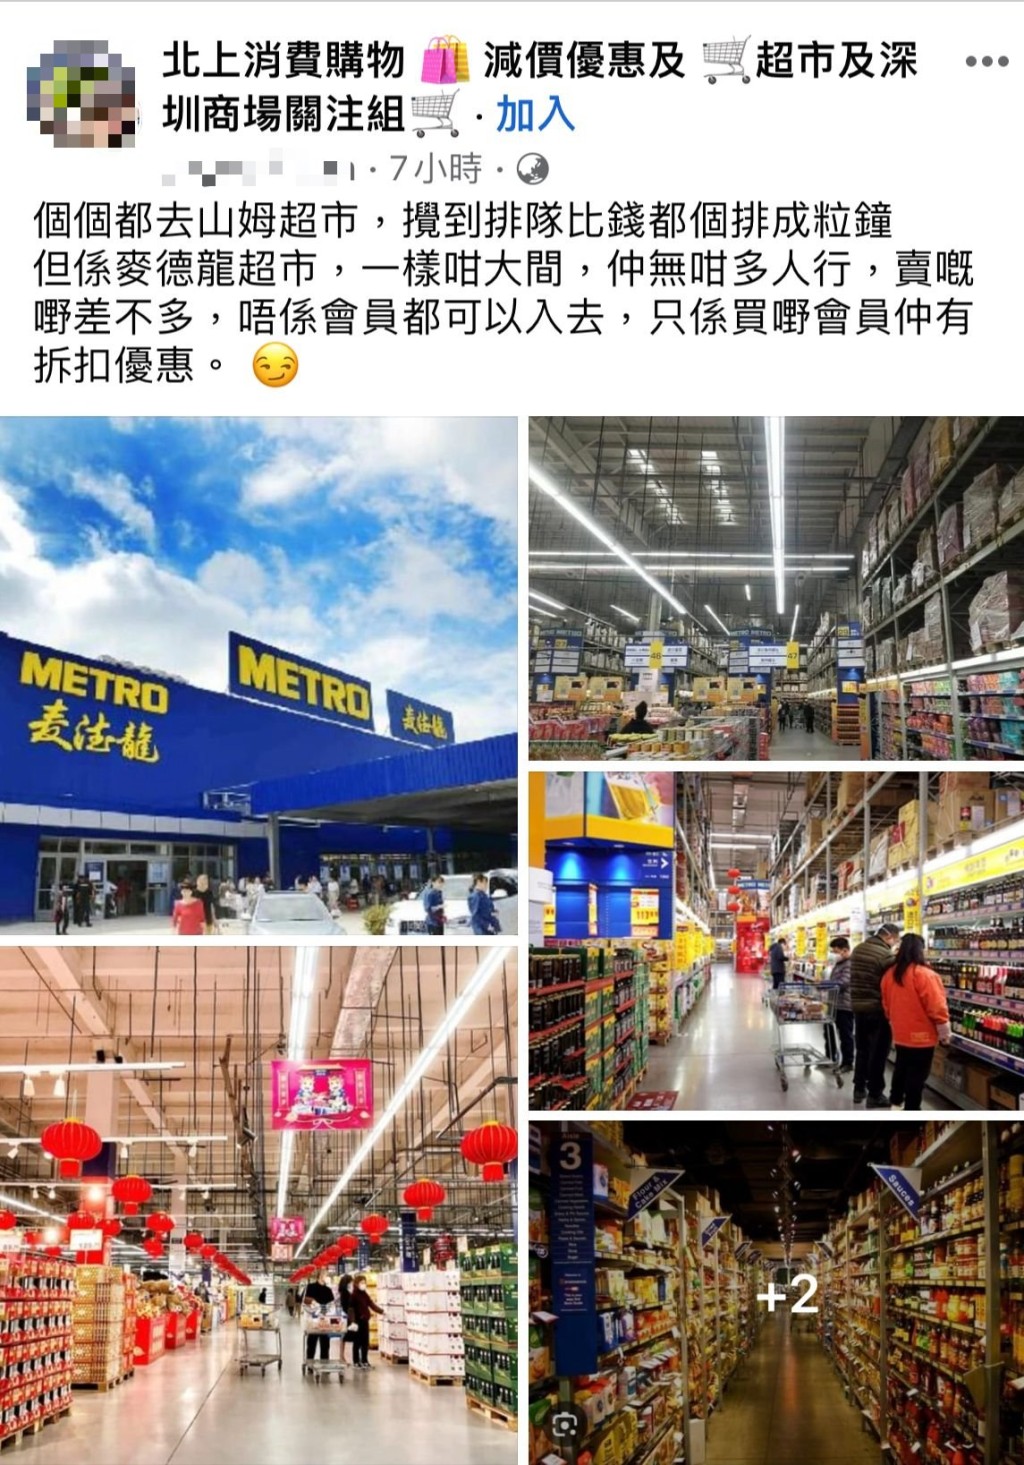 最近在facebook群组「北上消费购减价优惠及超市及深圳商场关注组」，有网民发帖力赞麦德龙超市，并附上超市内部购物环境相片。